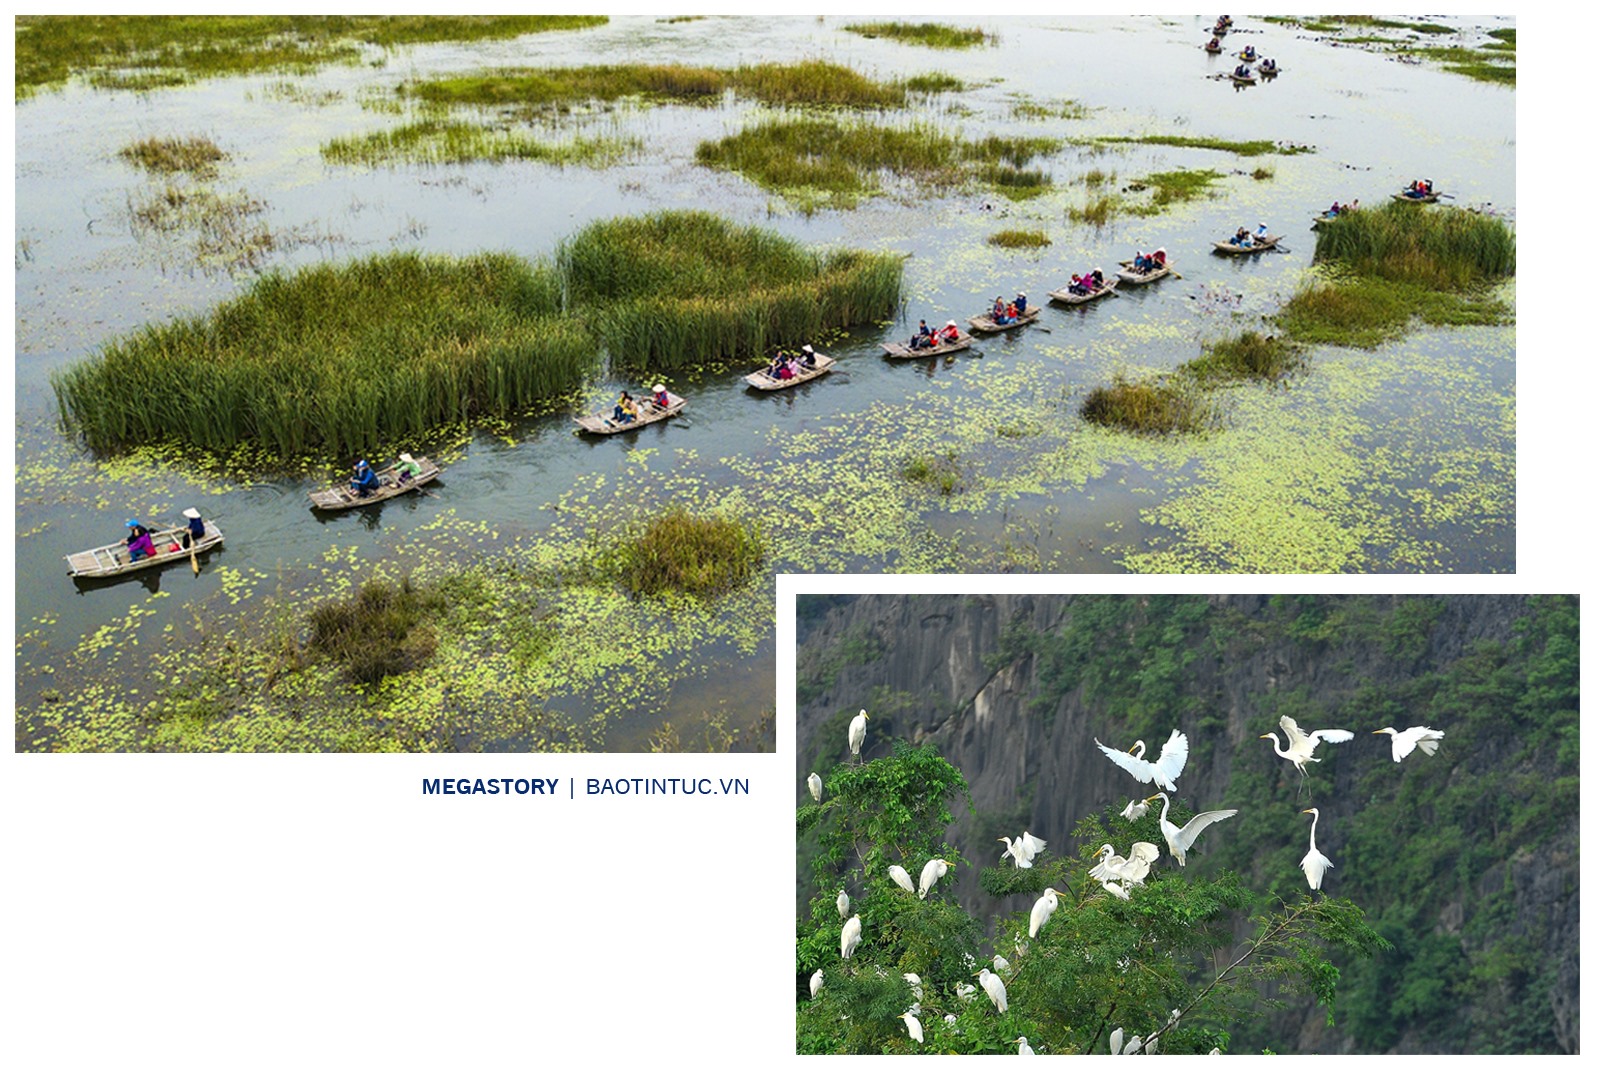 Đầm Vân Long tại huyện Gia Viễn, tỉnh Ninh Bình - khu bảo tồn thiên nhiên đất ngập nước lớn nhất vùng đồng bằng châu thổ Bắc Bộ.